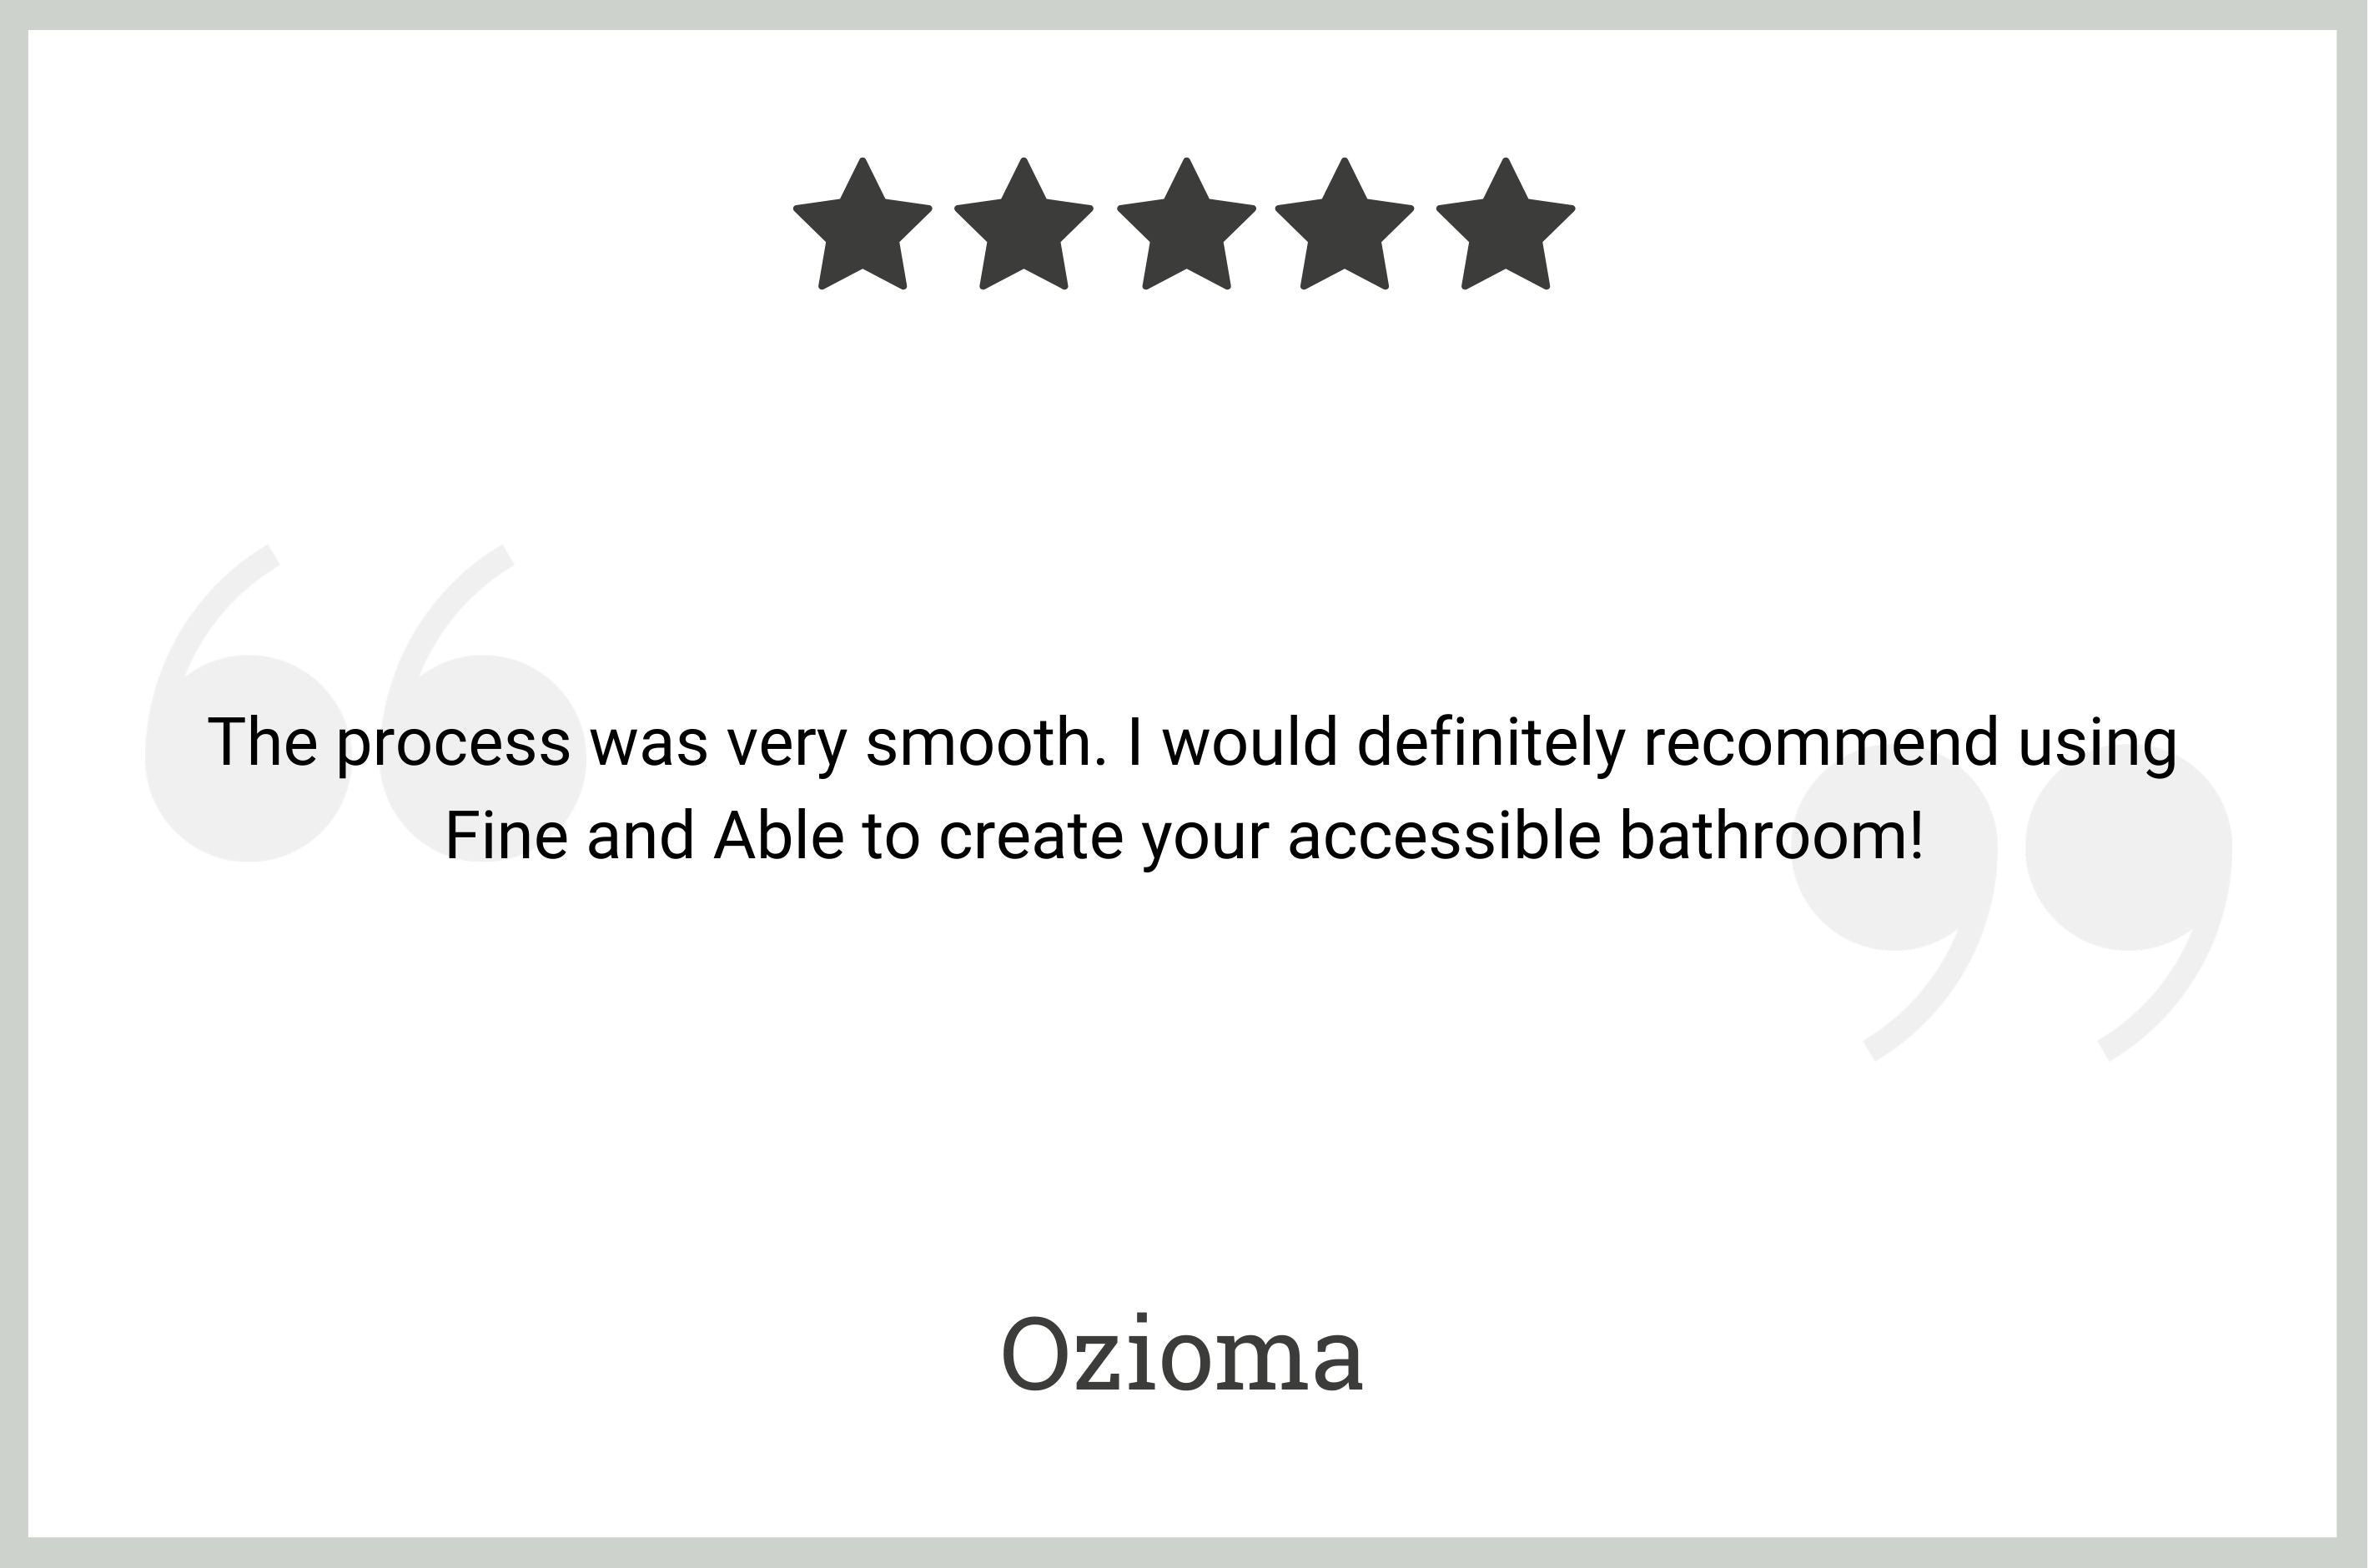 5 star review by Ozioma